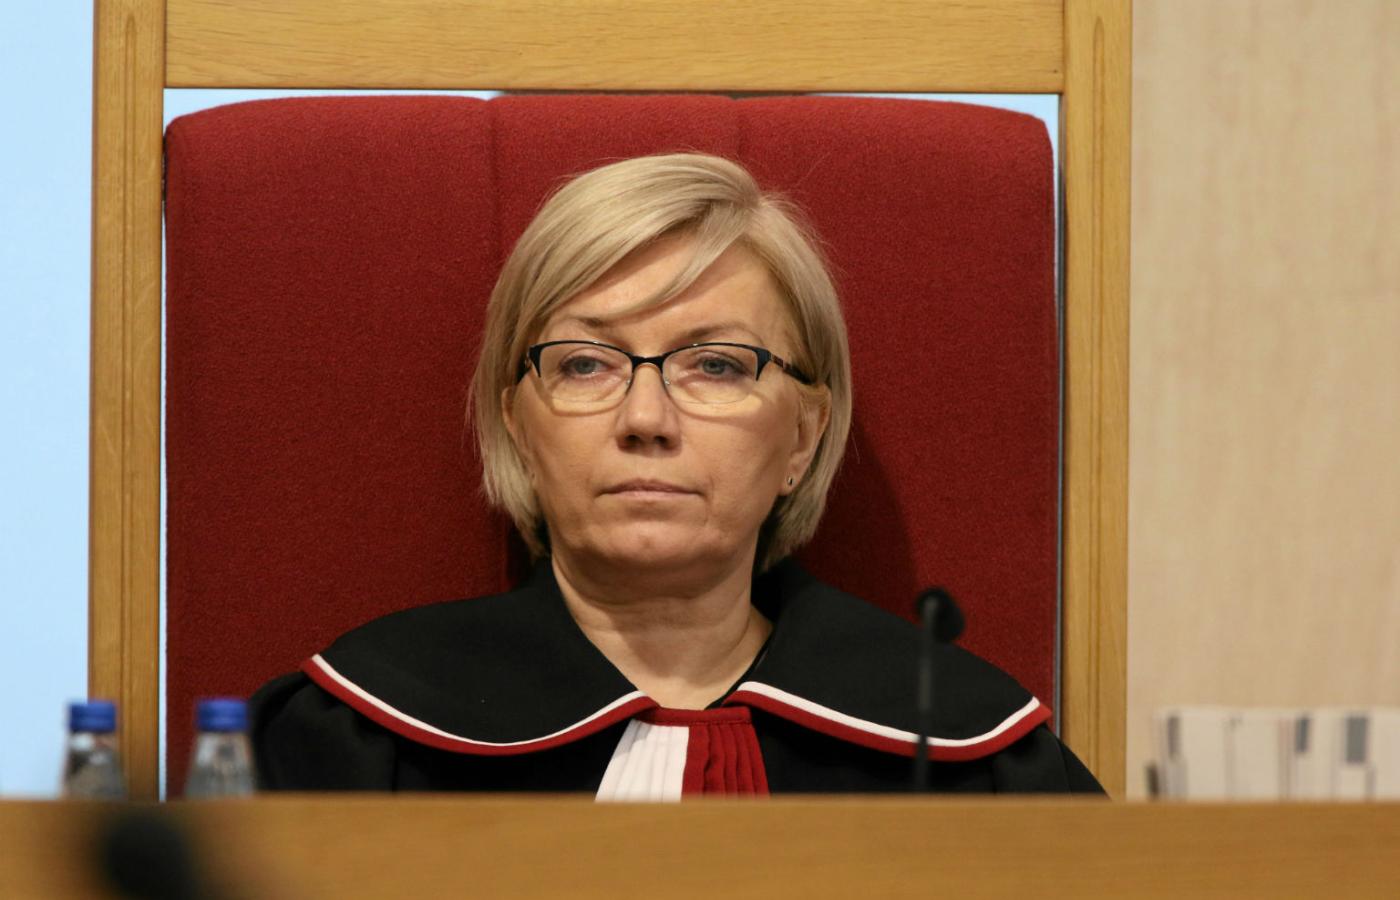 Pani Julia Przyłębska uważa się za prezesa Trybunału Konstytucyjnego.